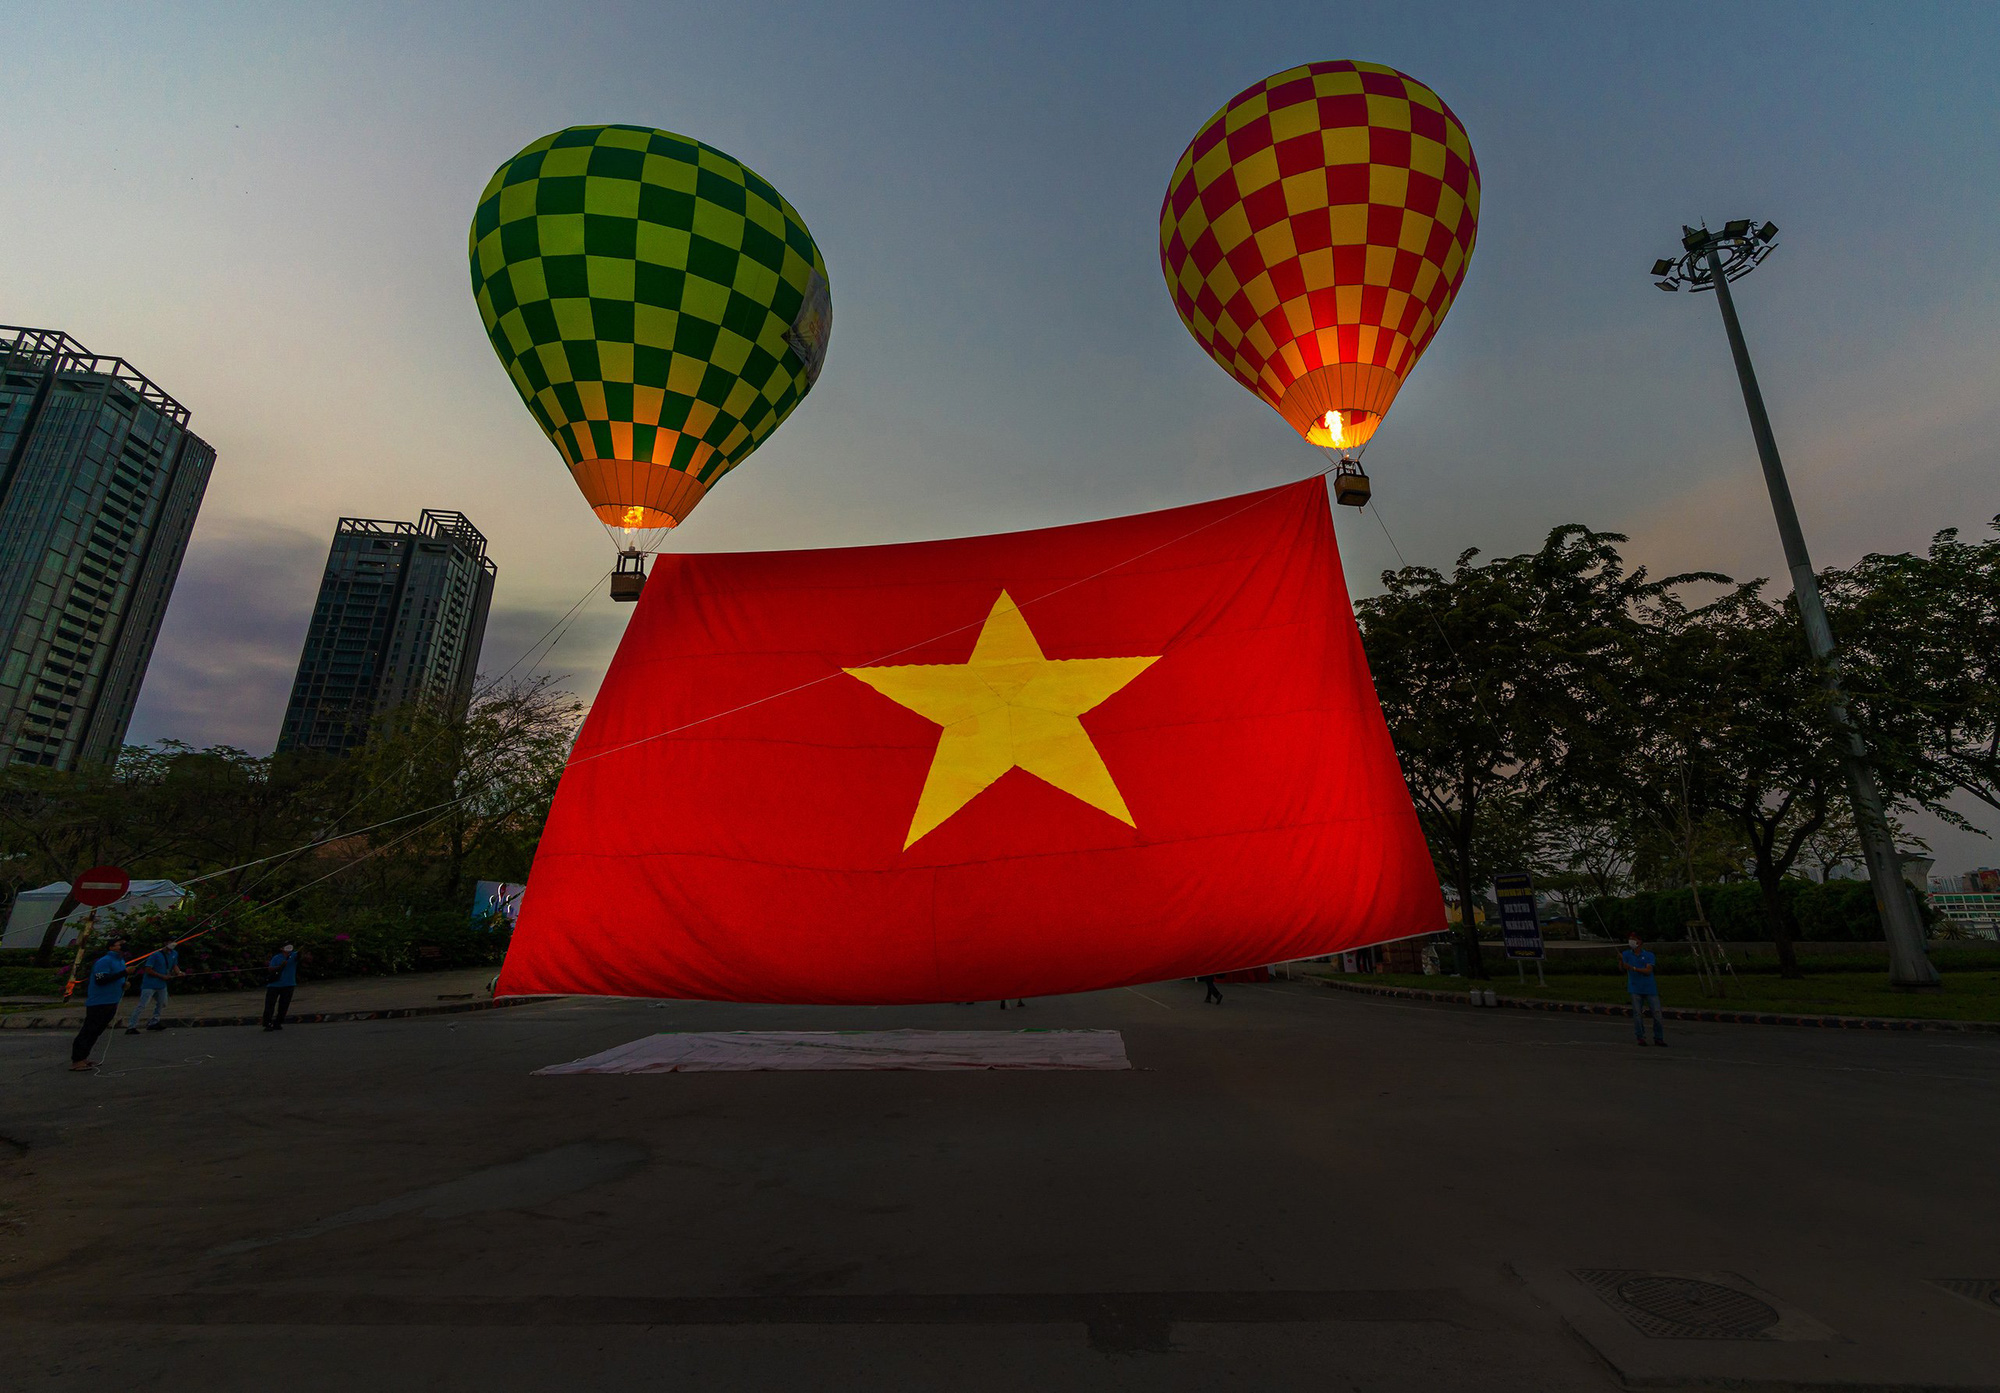 Thiêng liêng cờ Tổ quốc sẽ được tôn vinh trong các hoạt động kỷ niệm Quốc khánh. Hình ảnh của lá cờ đỏ sao vàng sáng chói sẽ tràn ngập trên khắp đất nước. Hãy cùng tôn dự và gìn giữ giá trị văn hóa đại diện cho quốc gia Việt Nam.